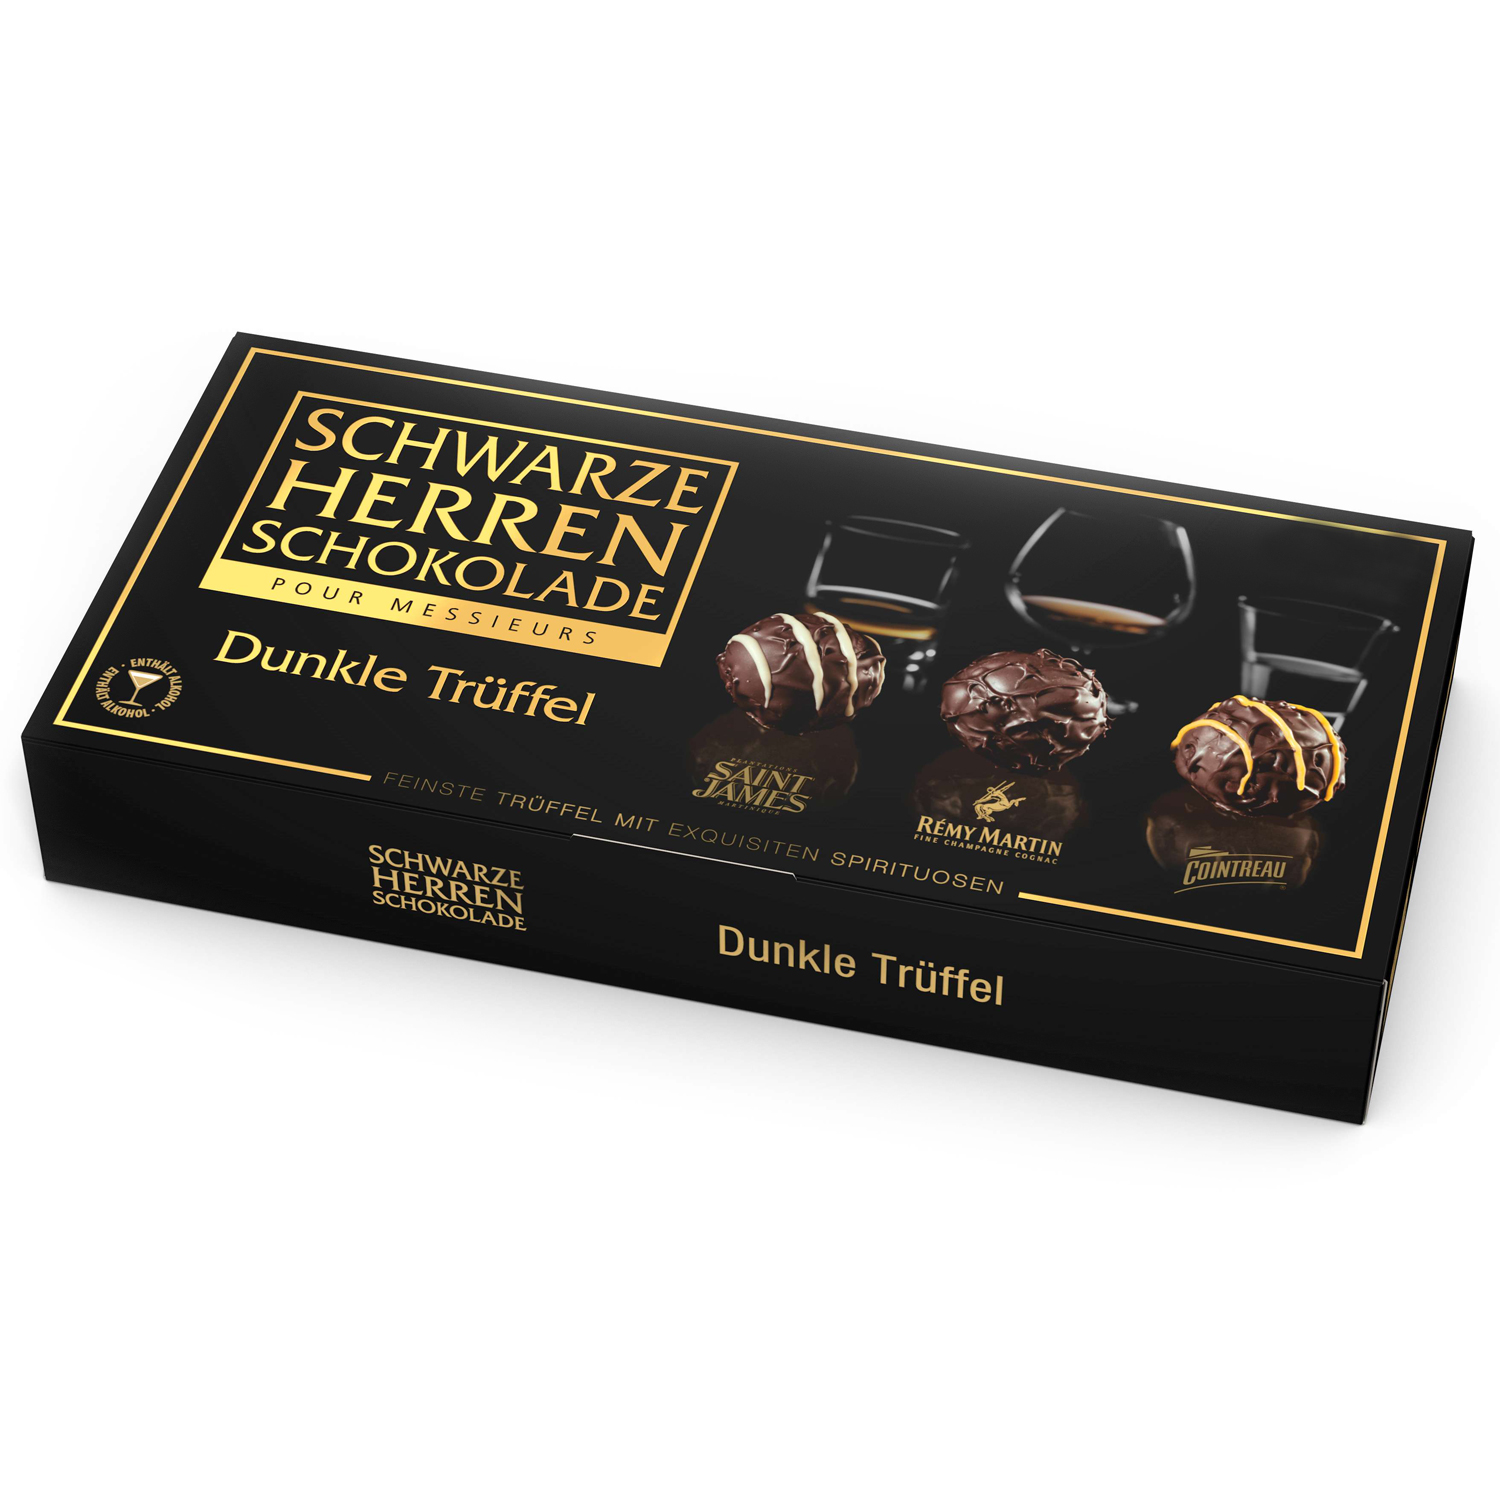 Schwarze Herren Schokolade Dunkle Trüffel 125g | Online kaufen im World ...